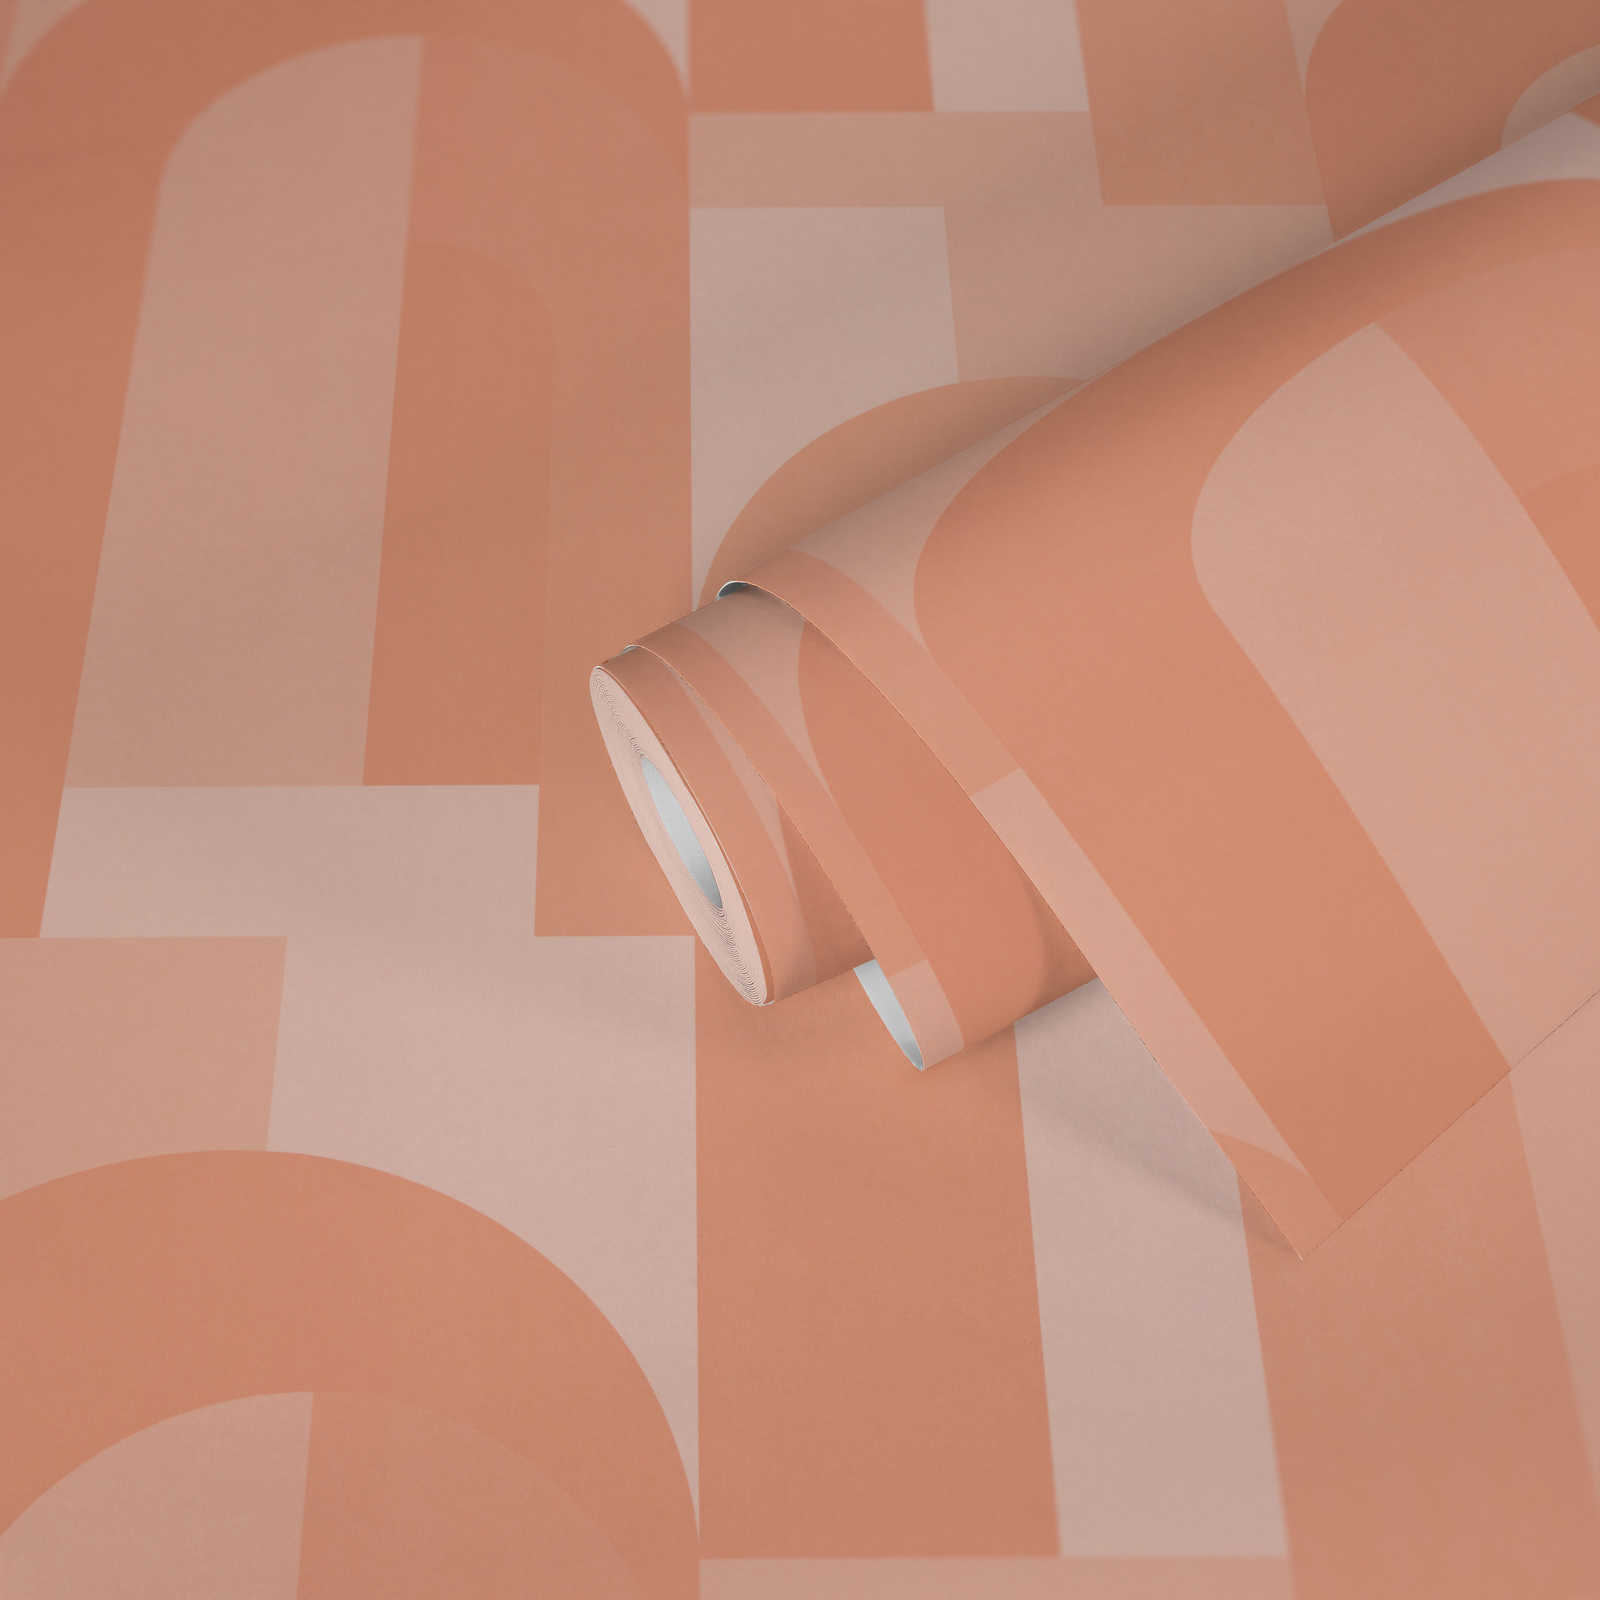             Papier peint graphique avec arc - orange, beige
        